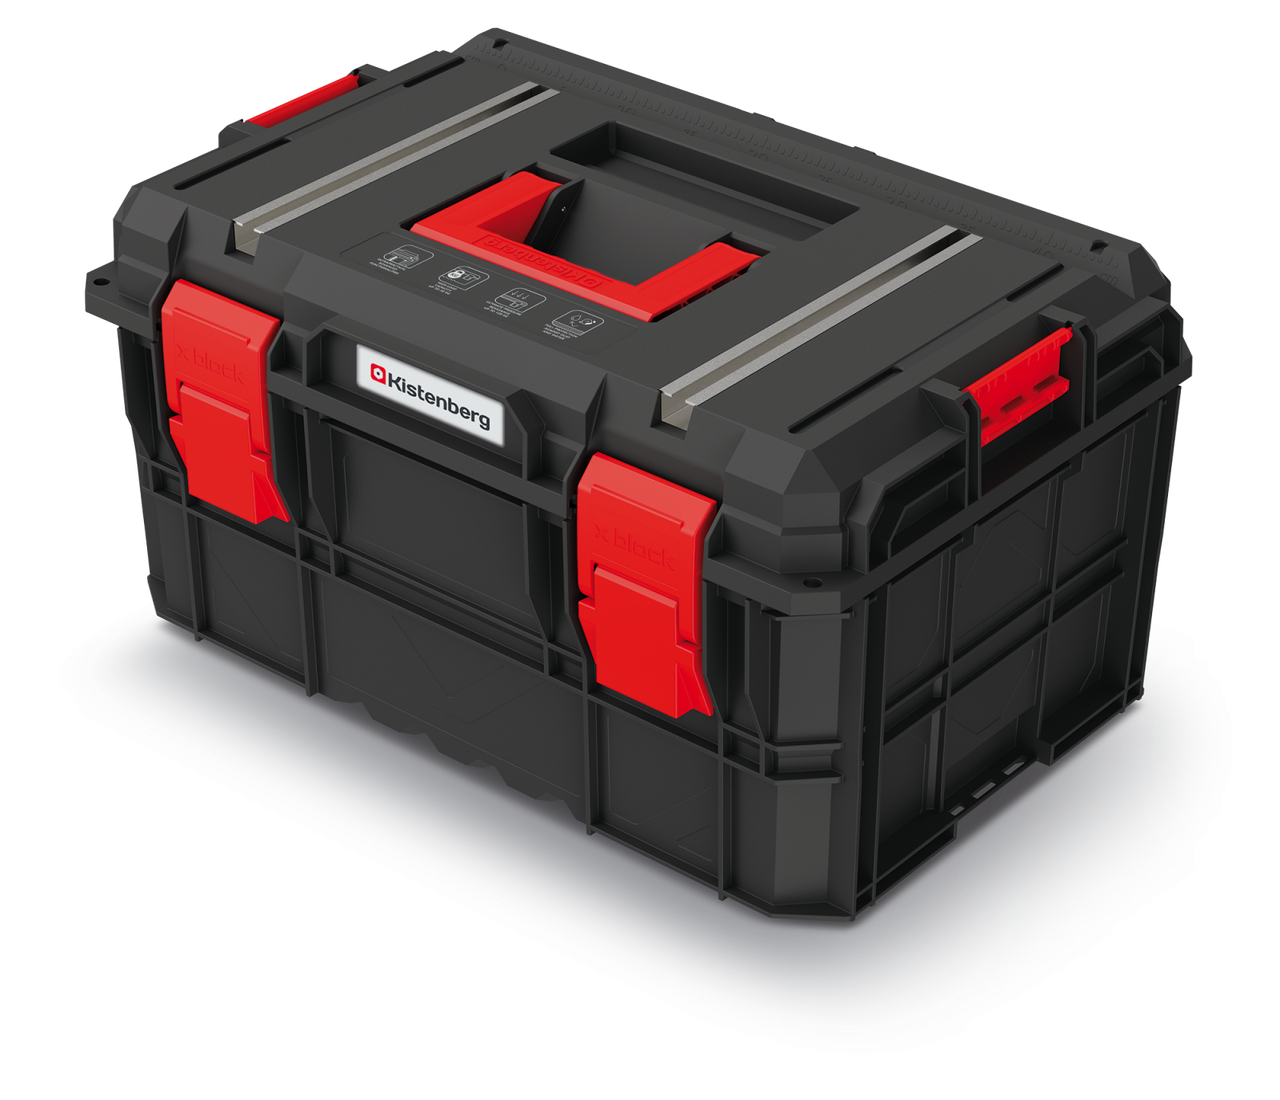 Ящик для инструментов Kistenberg TOOL BOX Tech X BLOCK, черный, фото 1